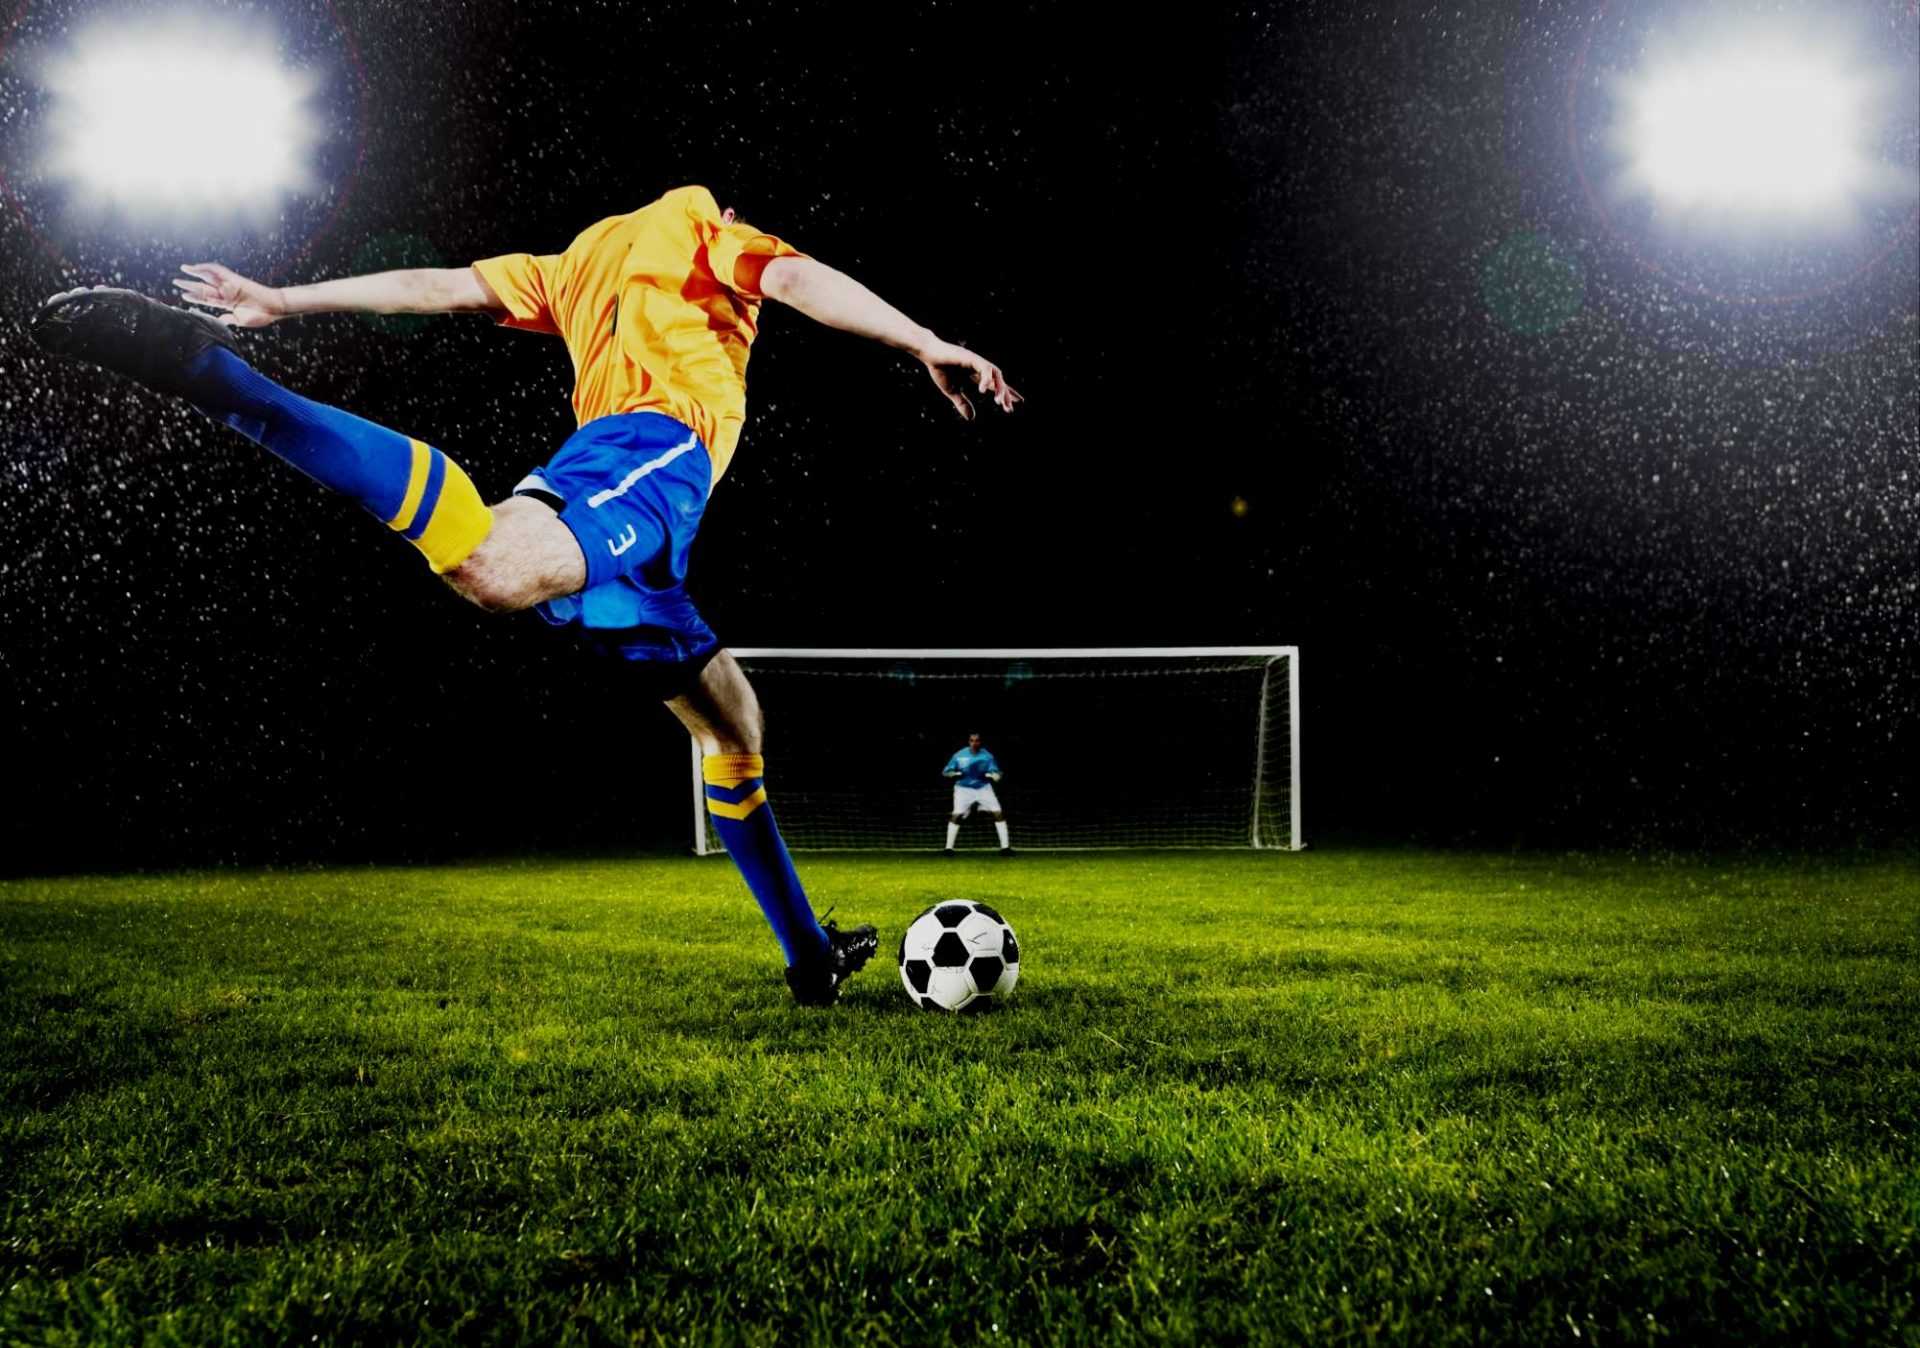 Профессиональные футзалки: что выбирают топовые игроки? – культура футбола